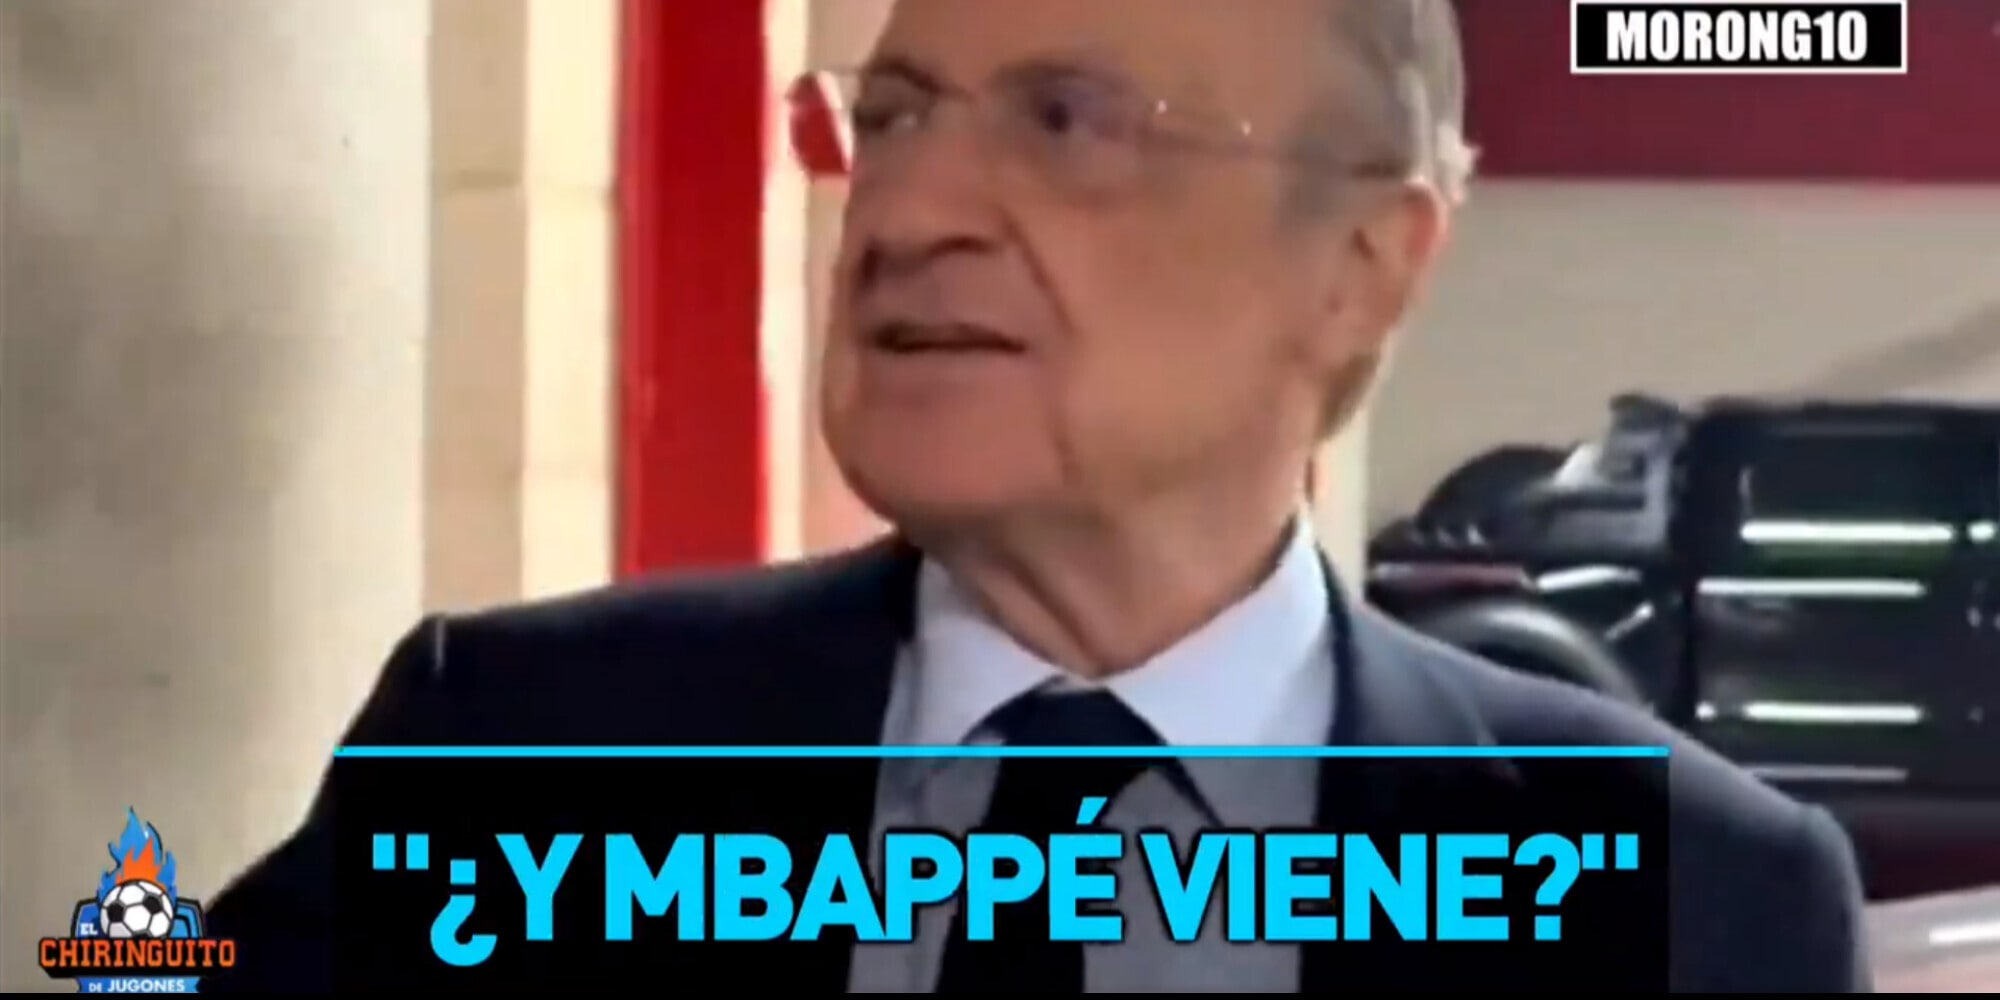 Corriere dello Sport – “Prendi Davies! Viene Mbappé?” La risposta di Perez sorprende i tifosi del Real